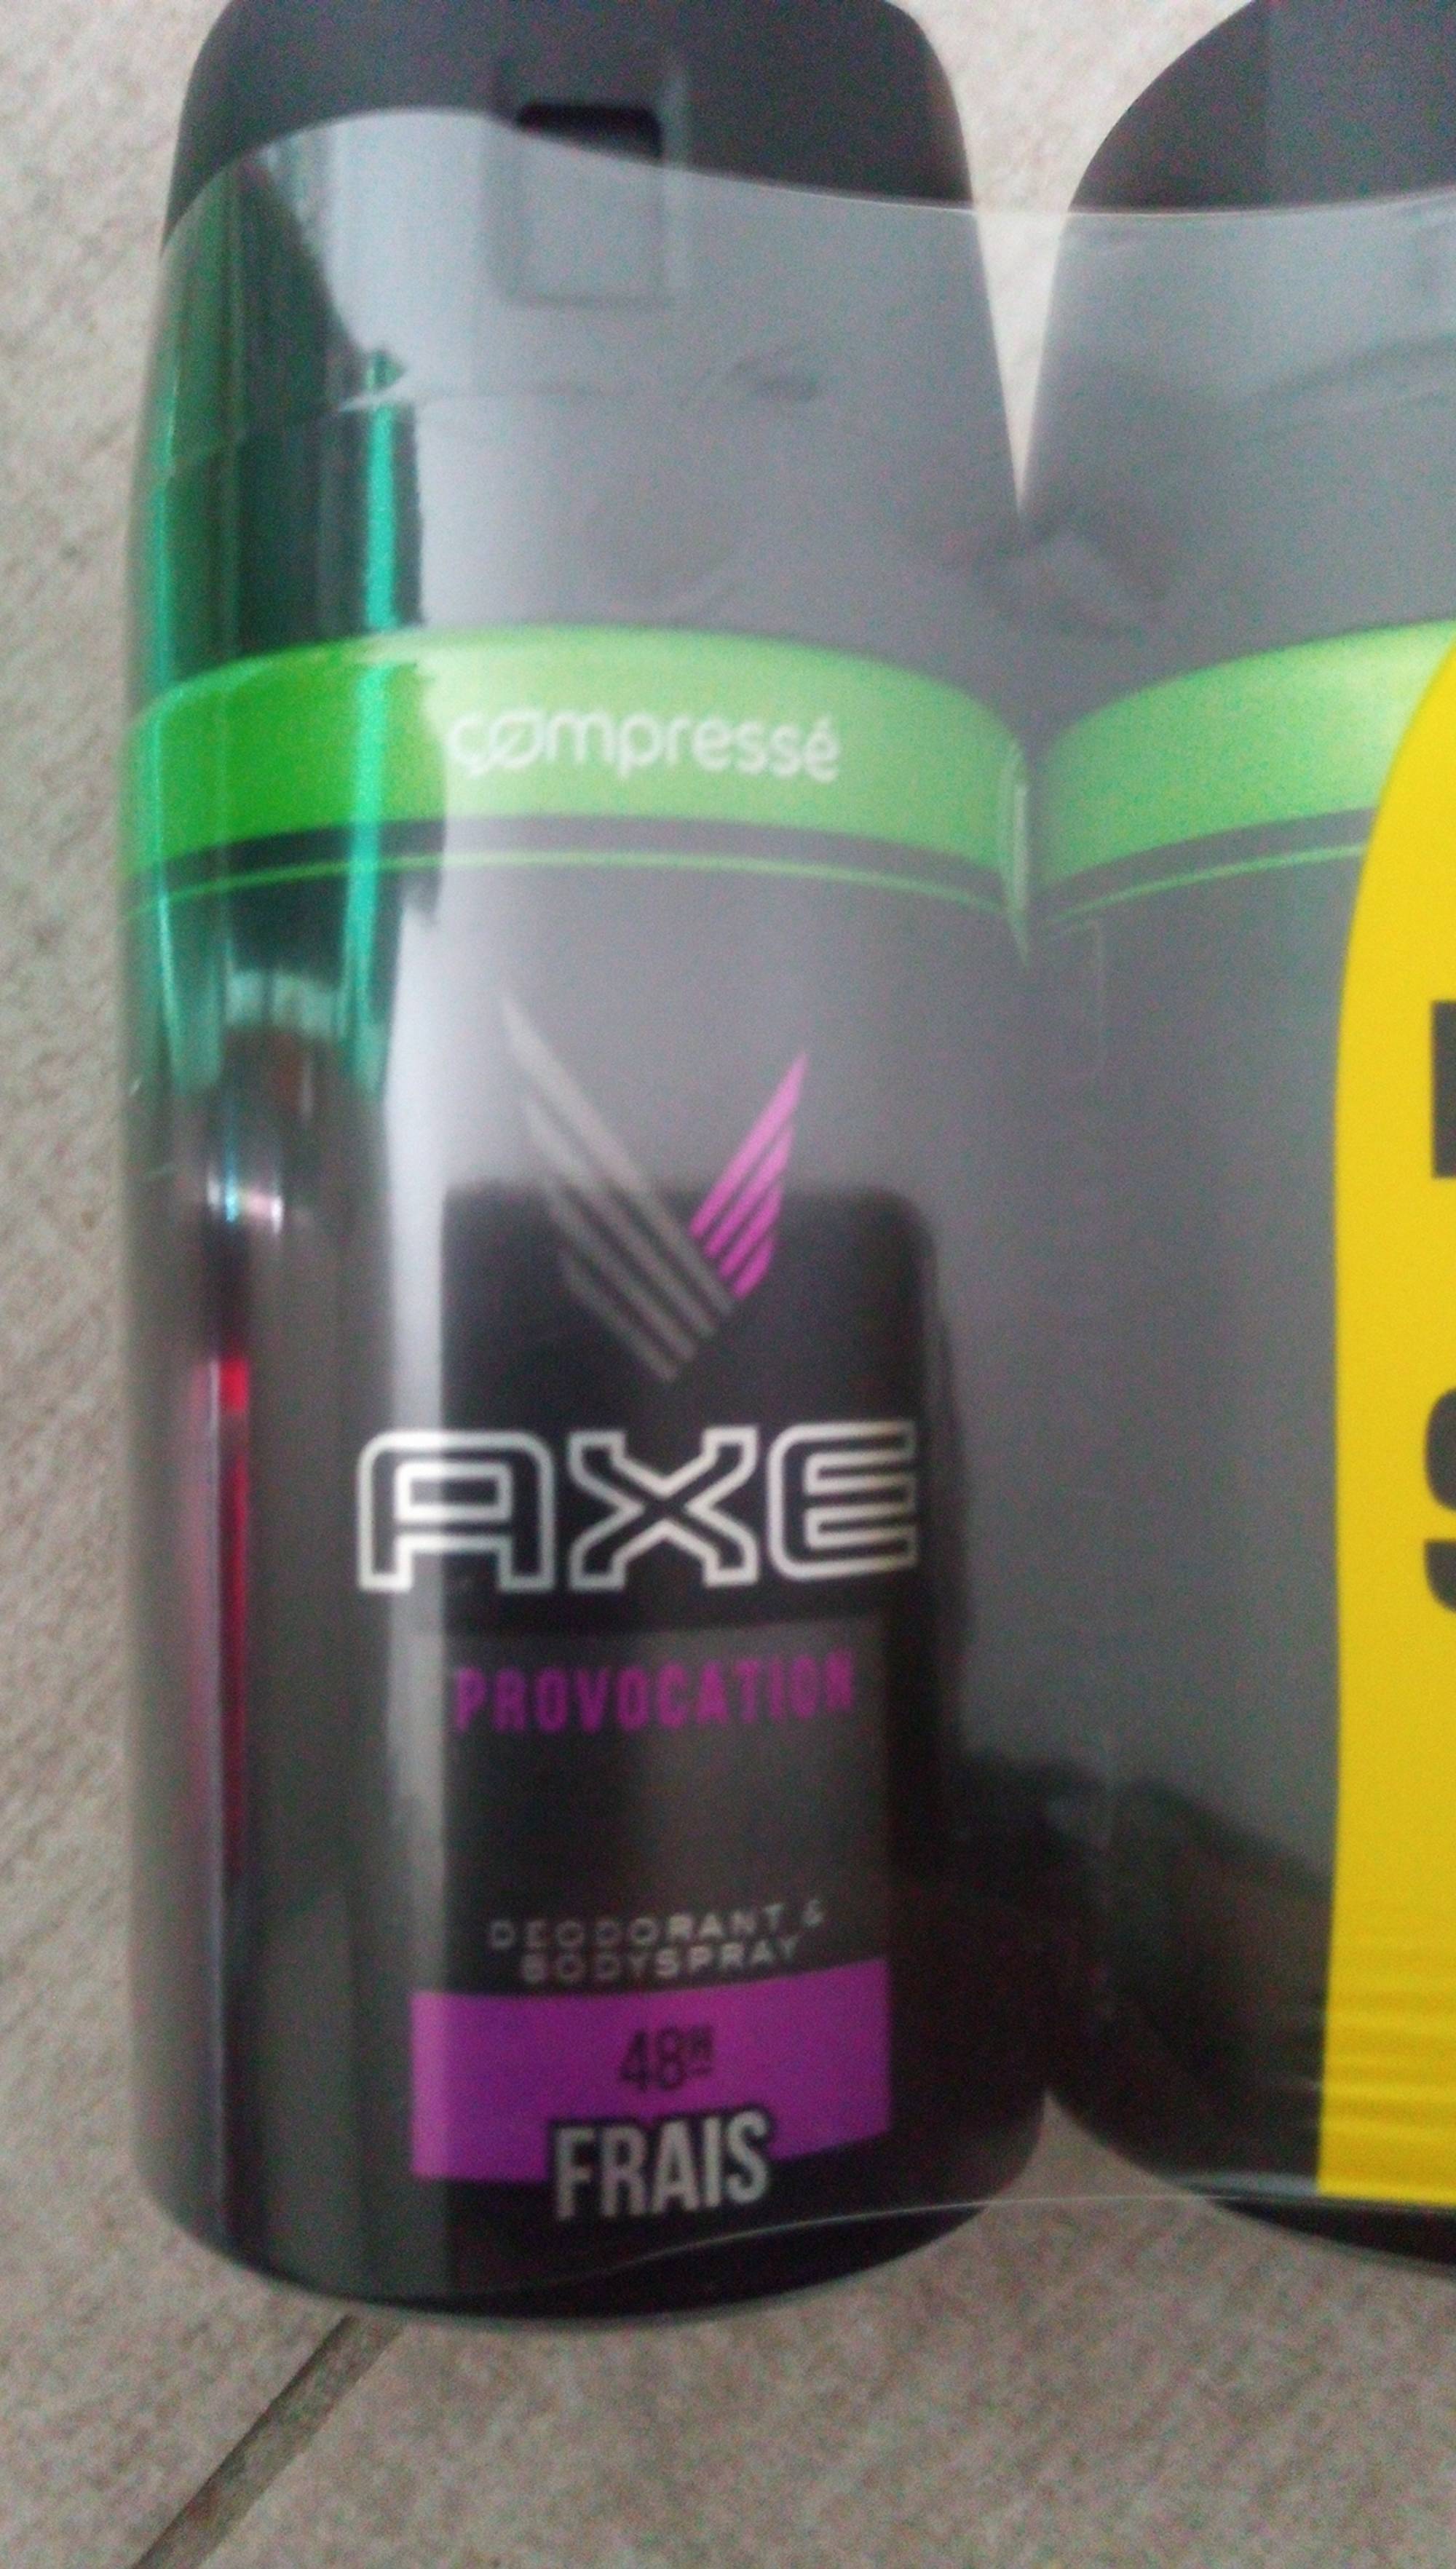 AXE - Provocation - Déodorant & bodyspray 48h